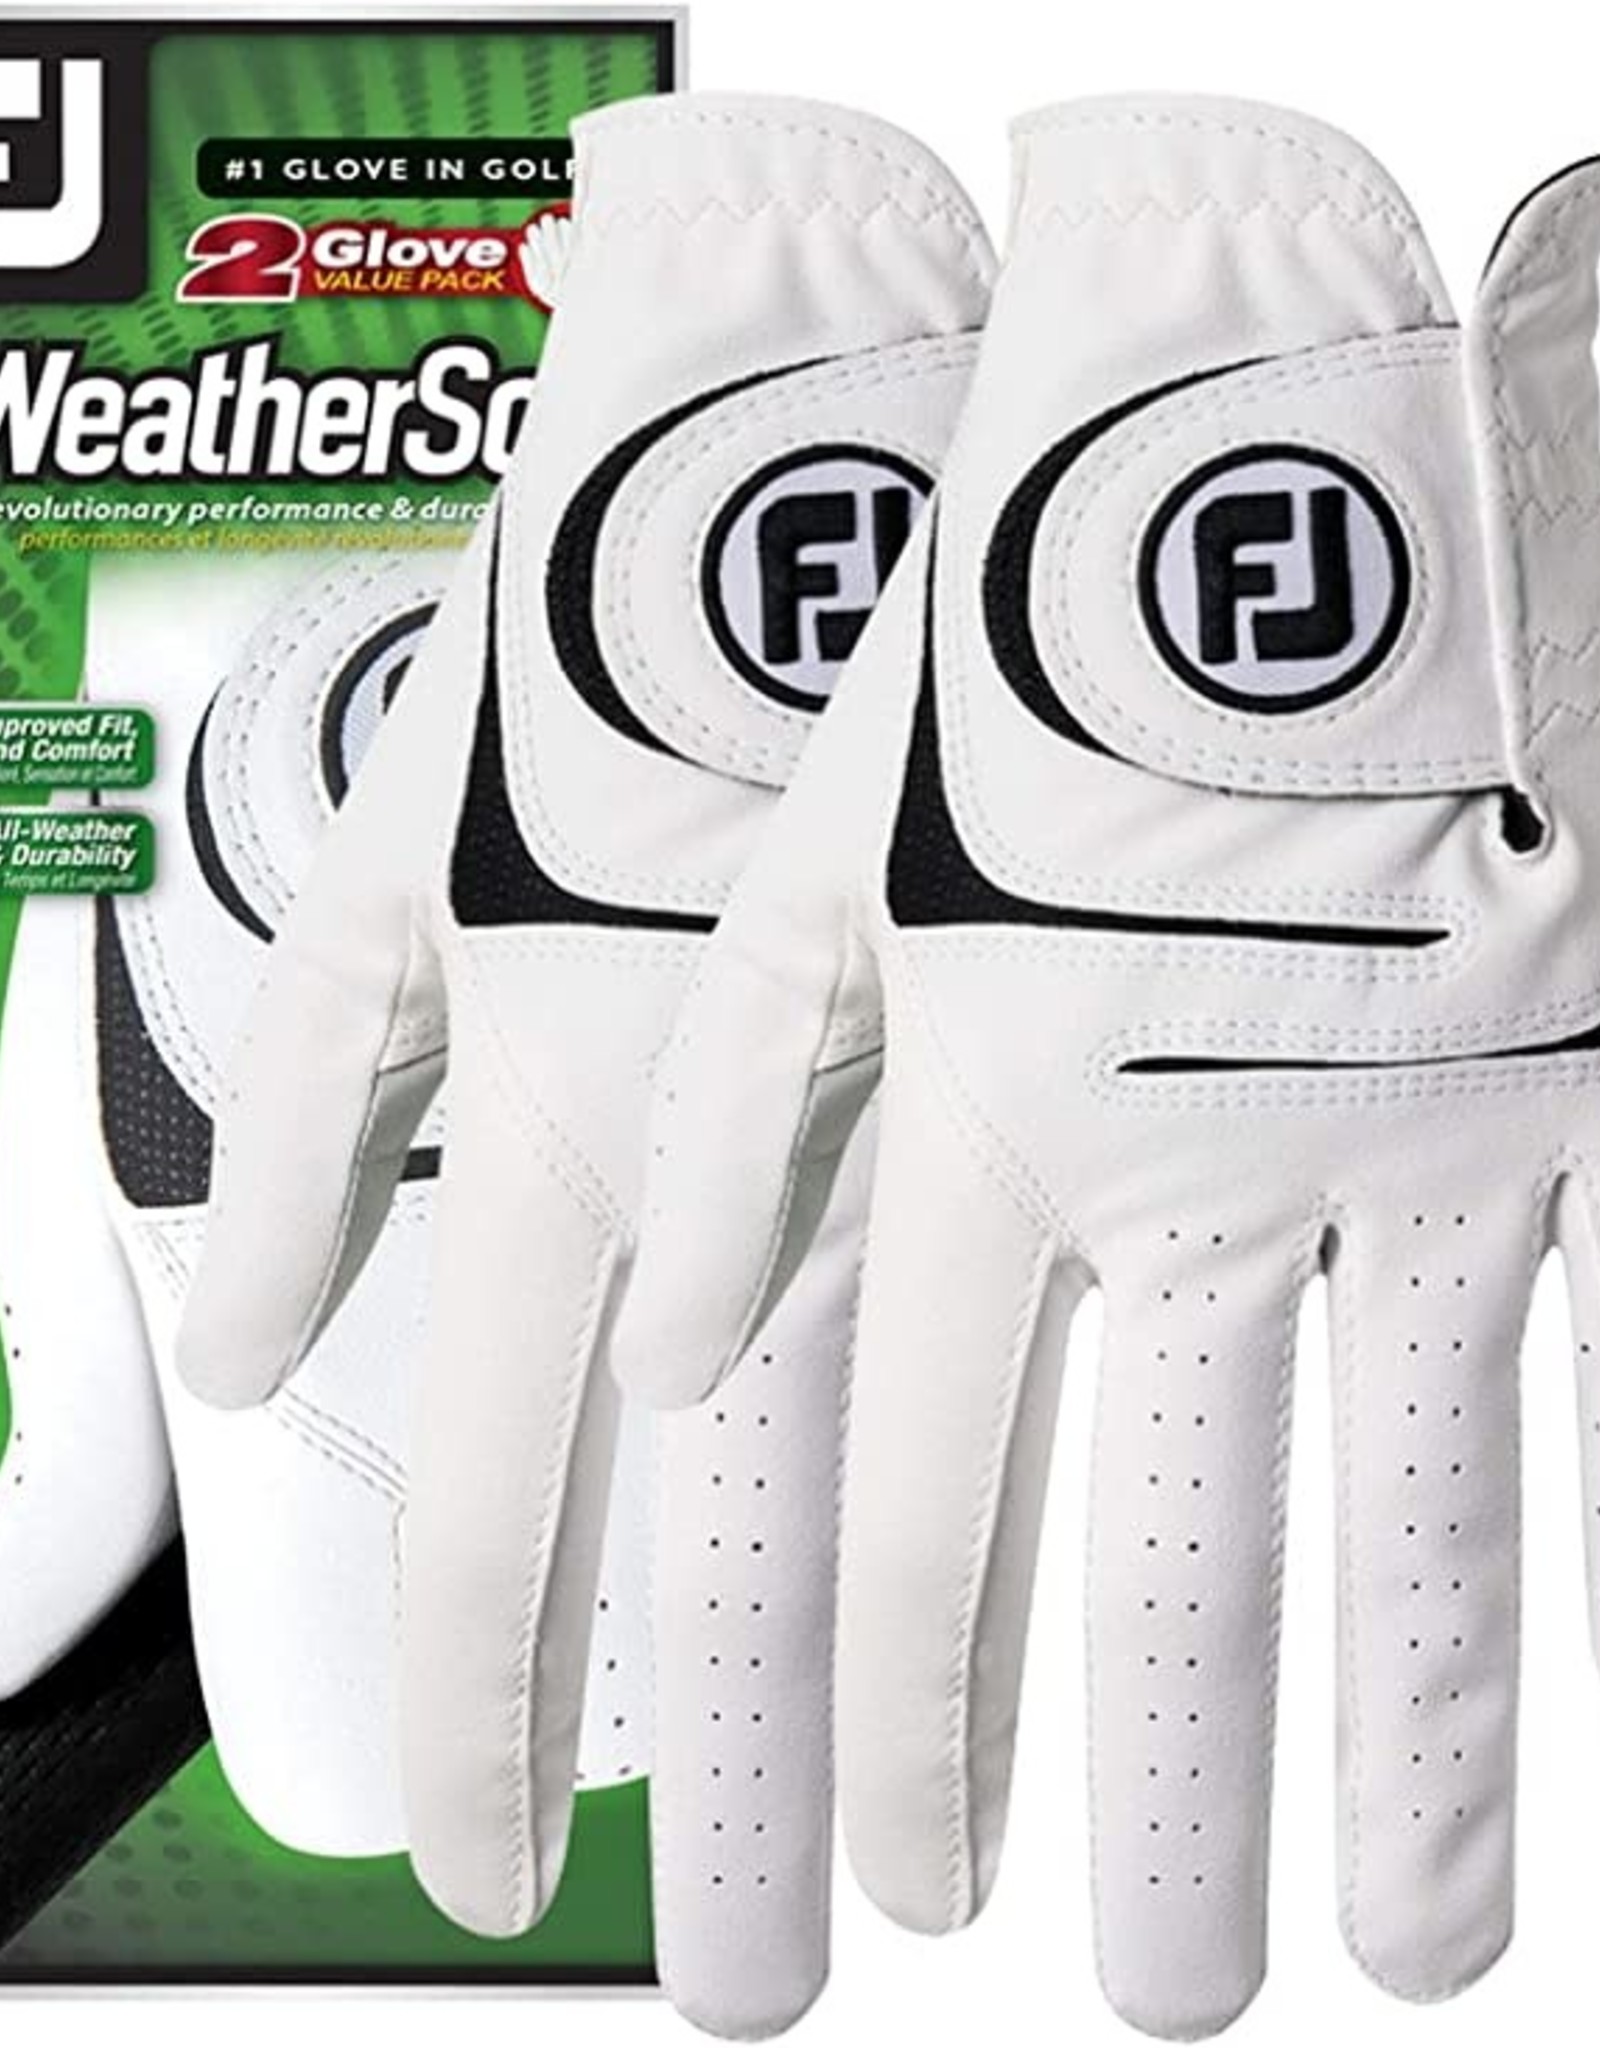 FootJoy FootJoy Men's WeatherSof Glove